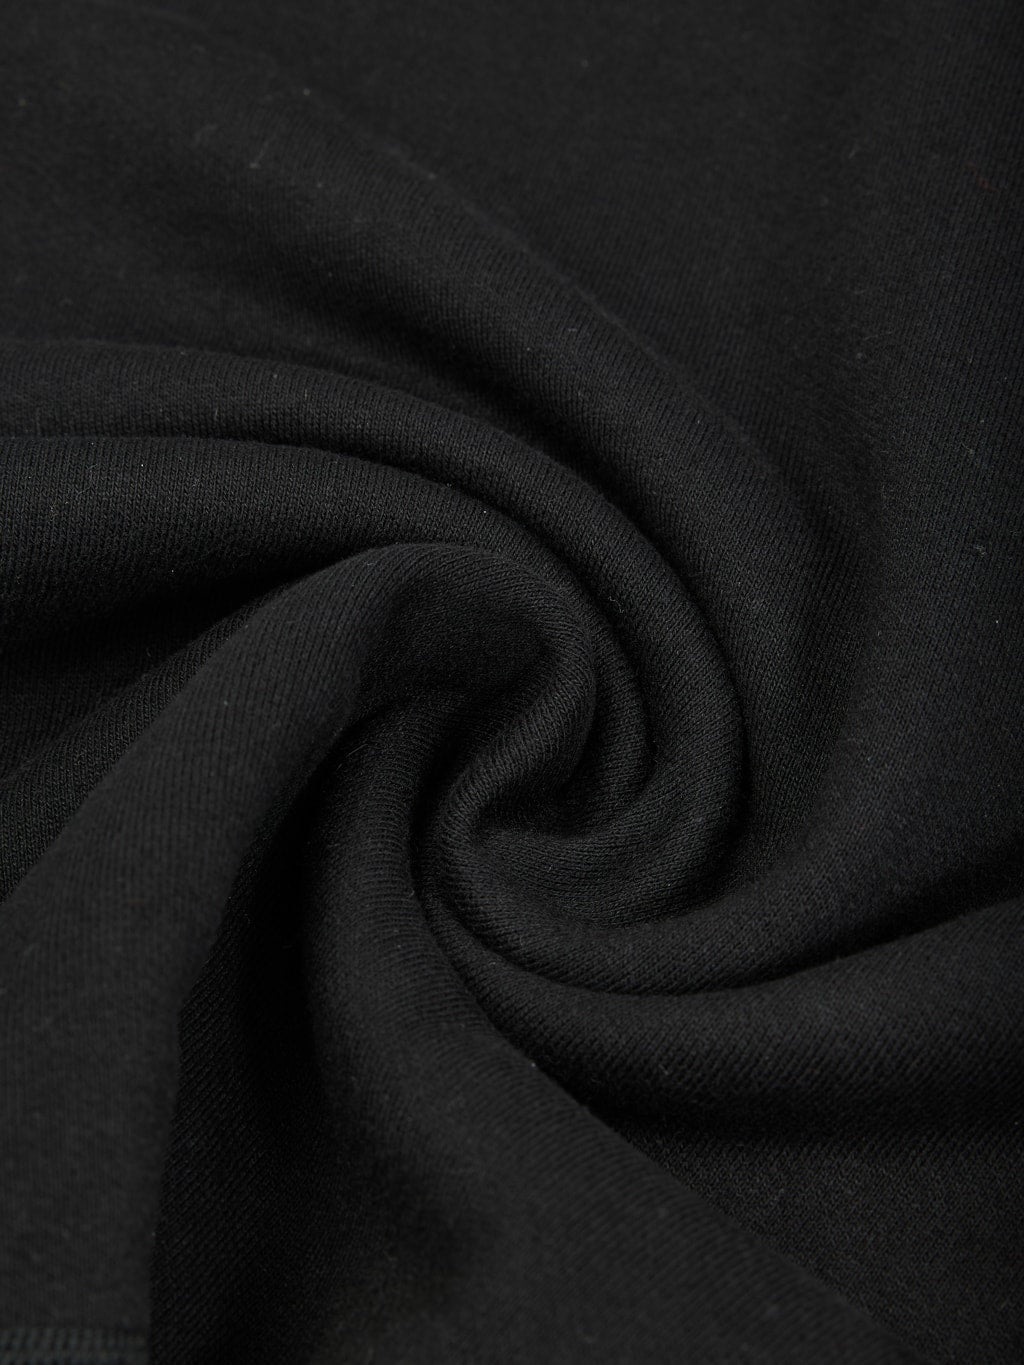 Whitesville cotton Loopwheel Sweatshirt Black texture